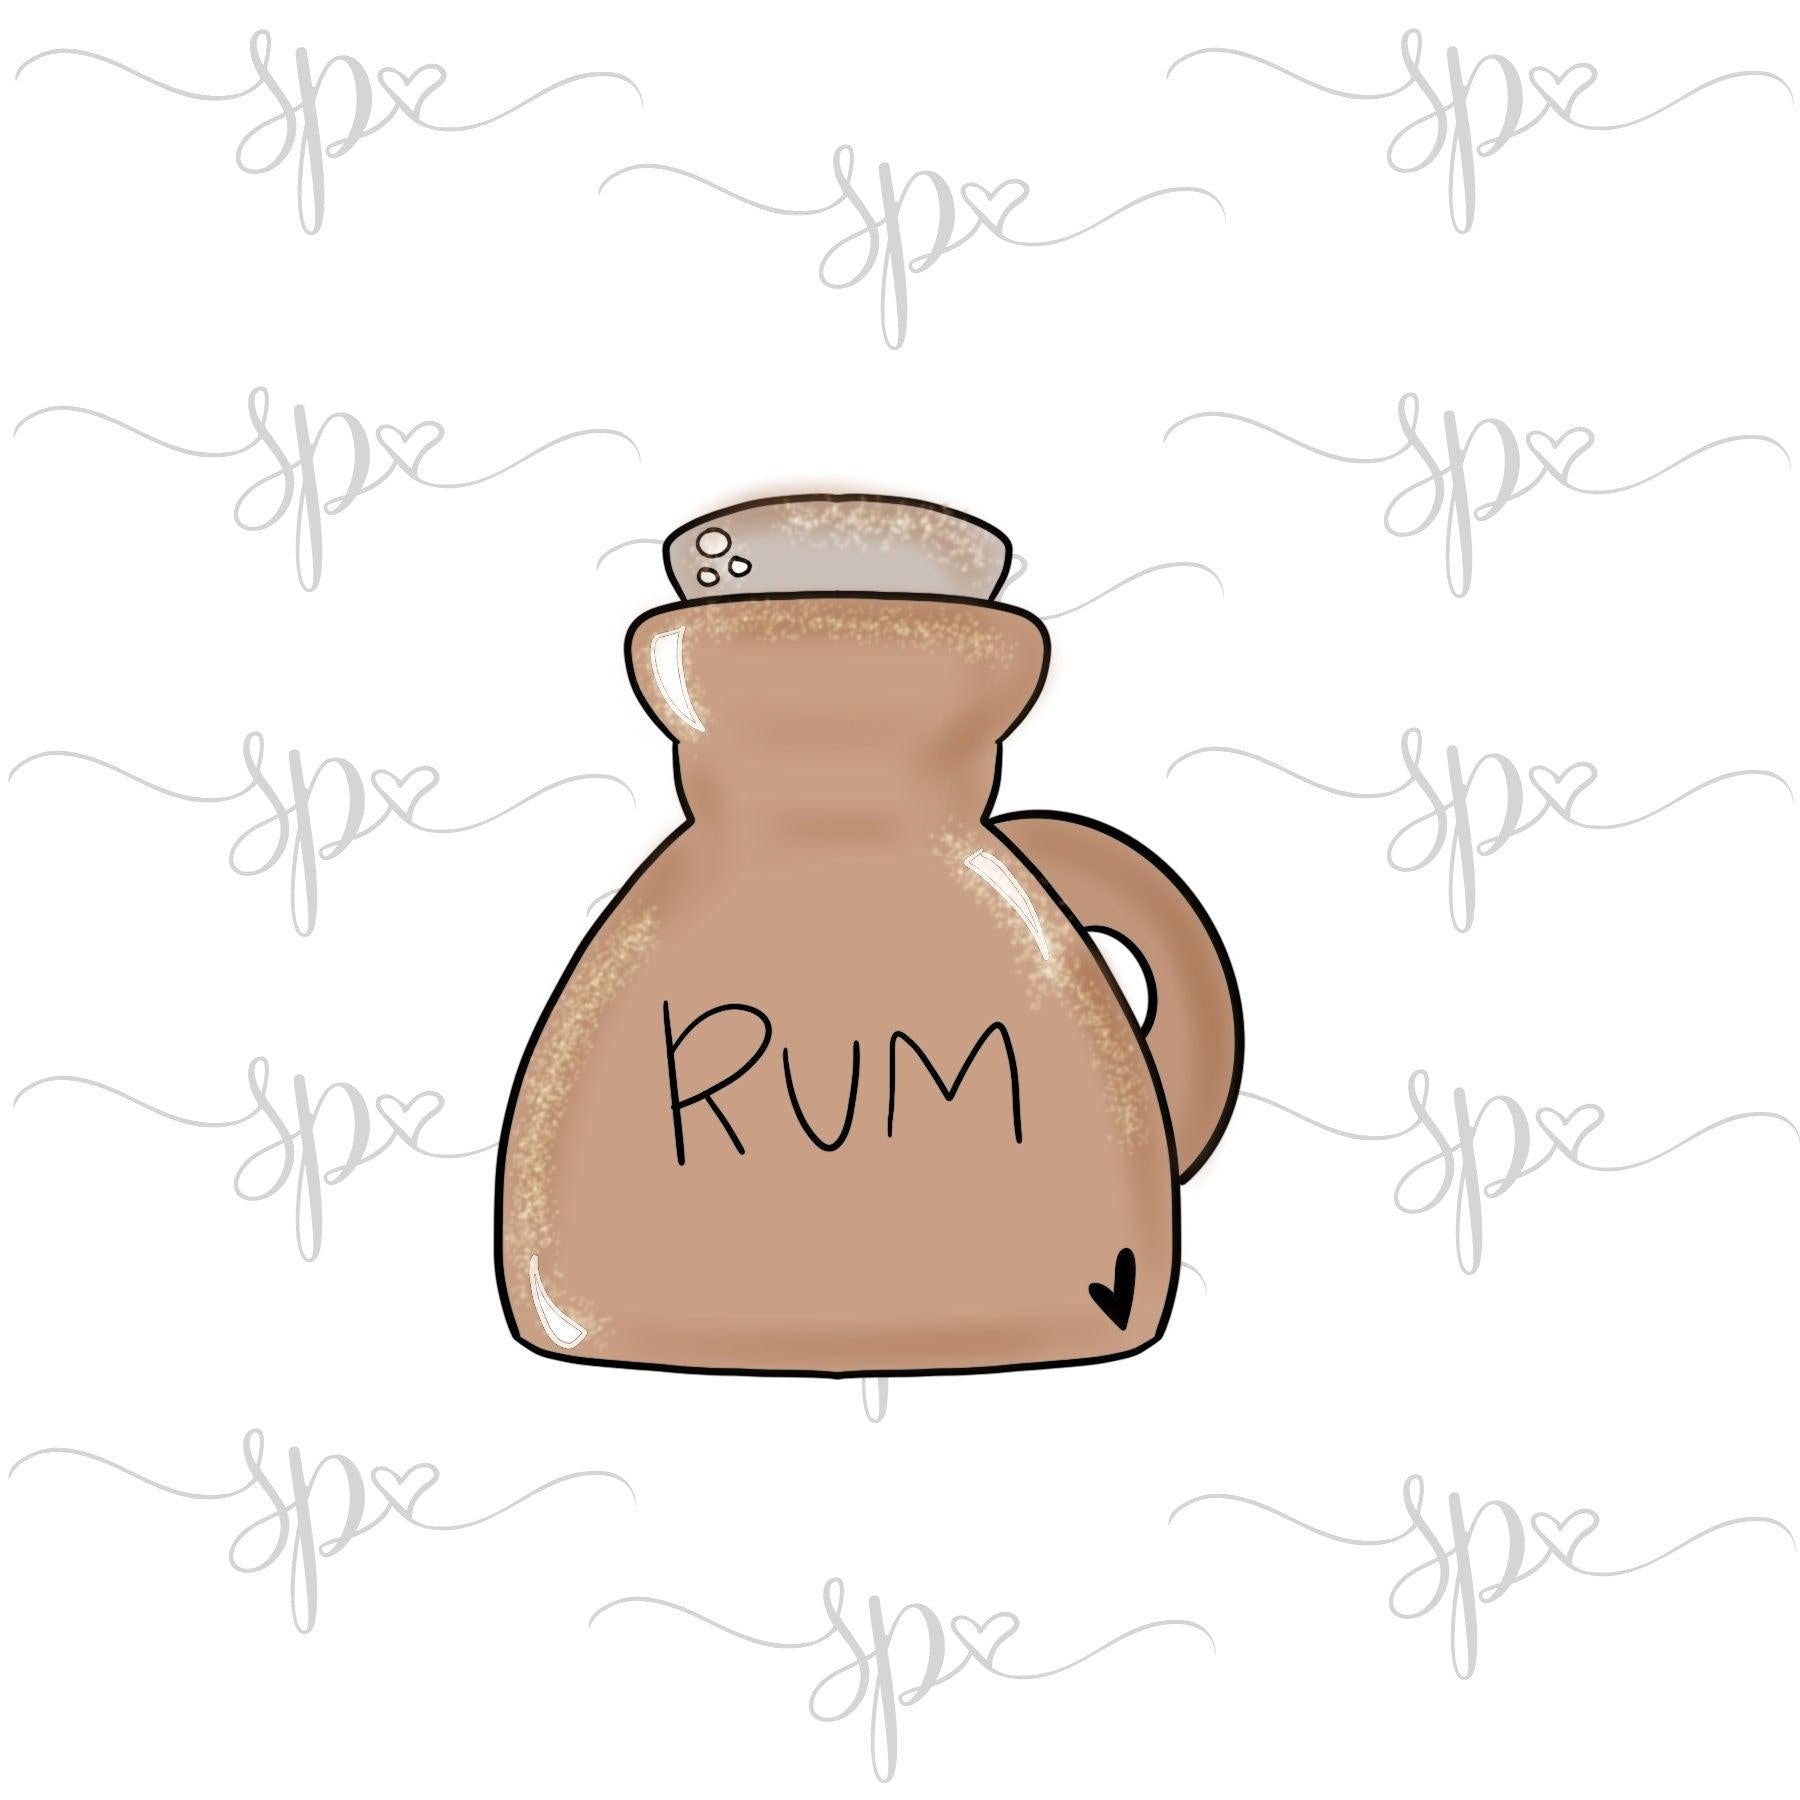 Rum Jug Cookie Cutter - Sweetleigh 